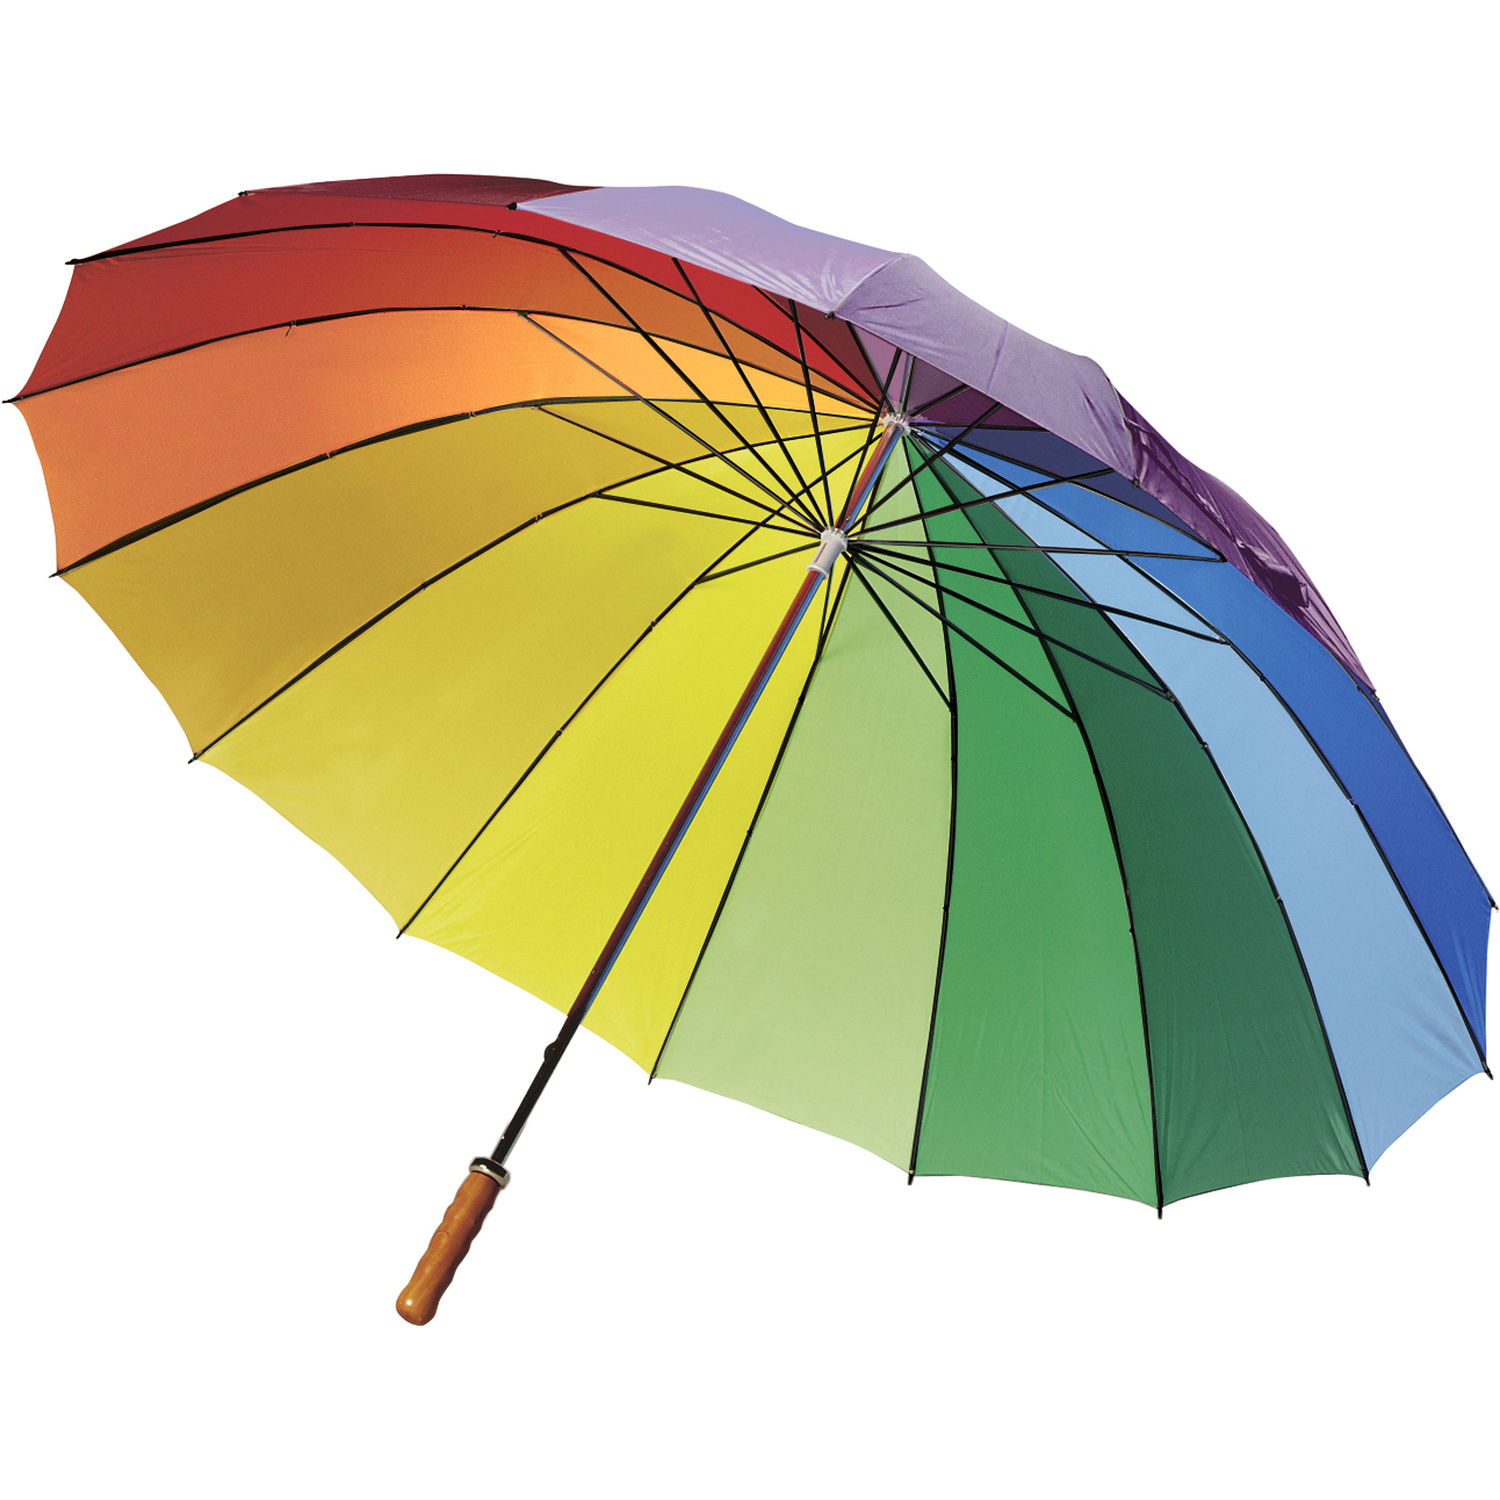 004058 009999999 3d135 ins pro01 fal - Rainbow polyester umbrella